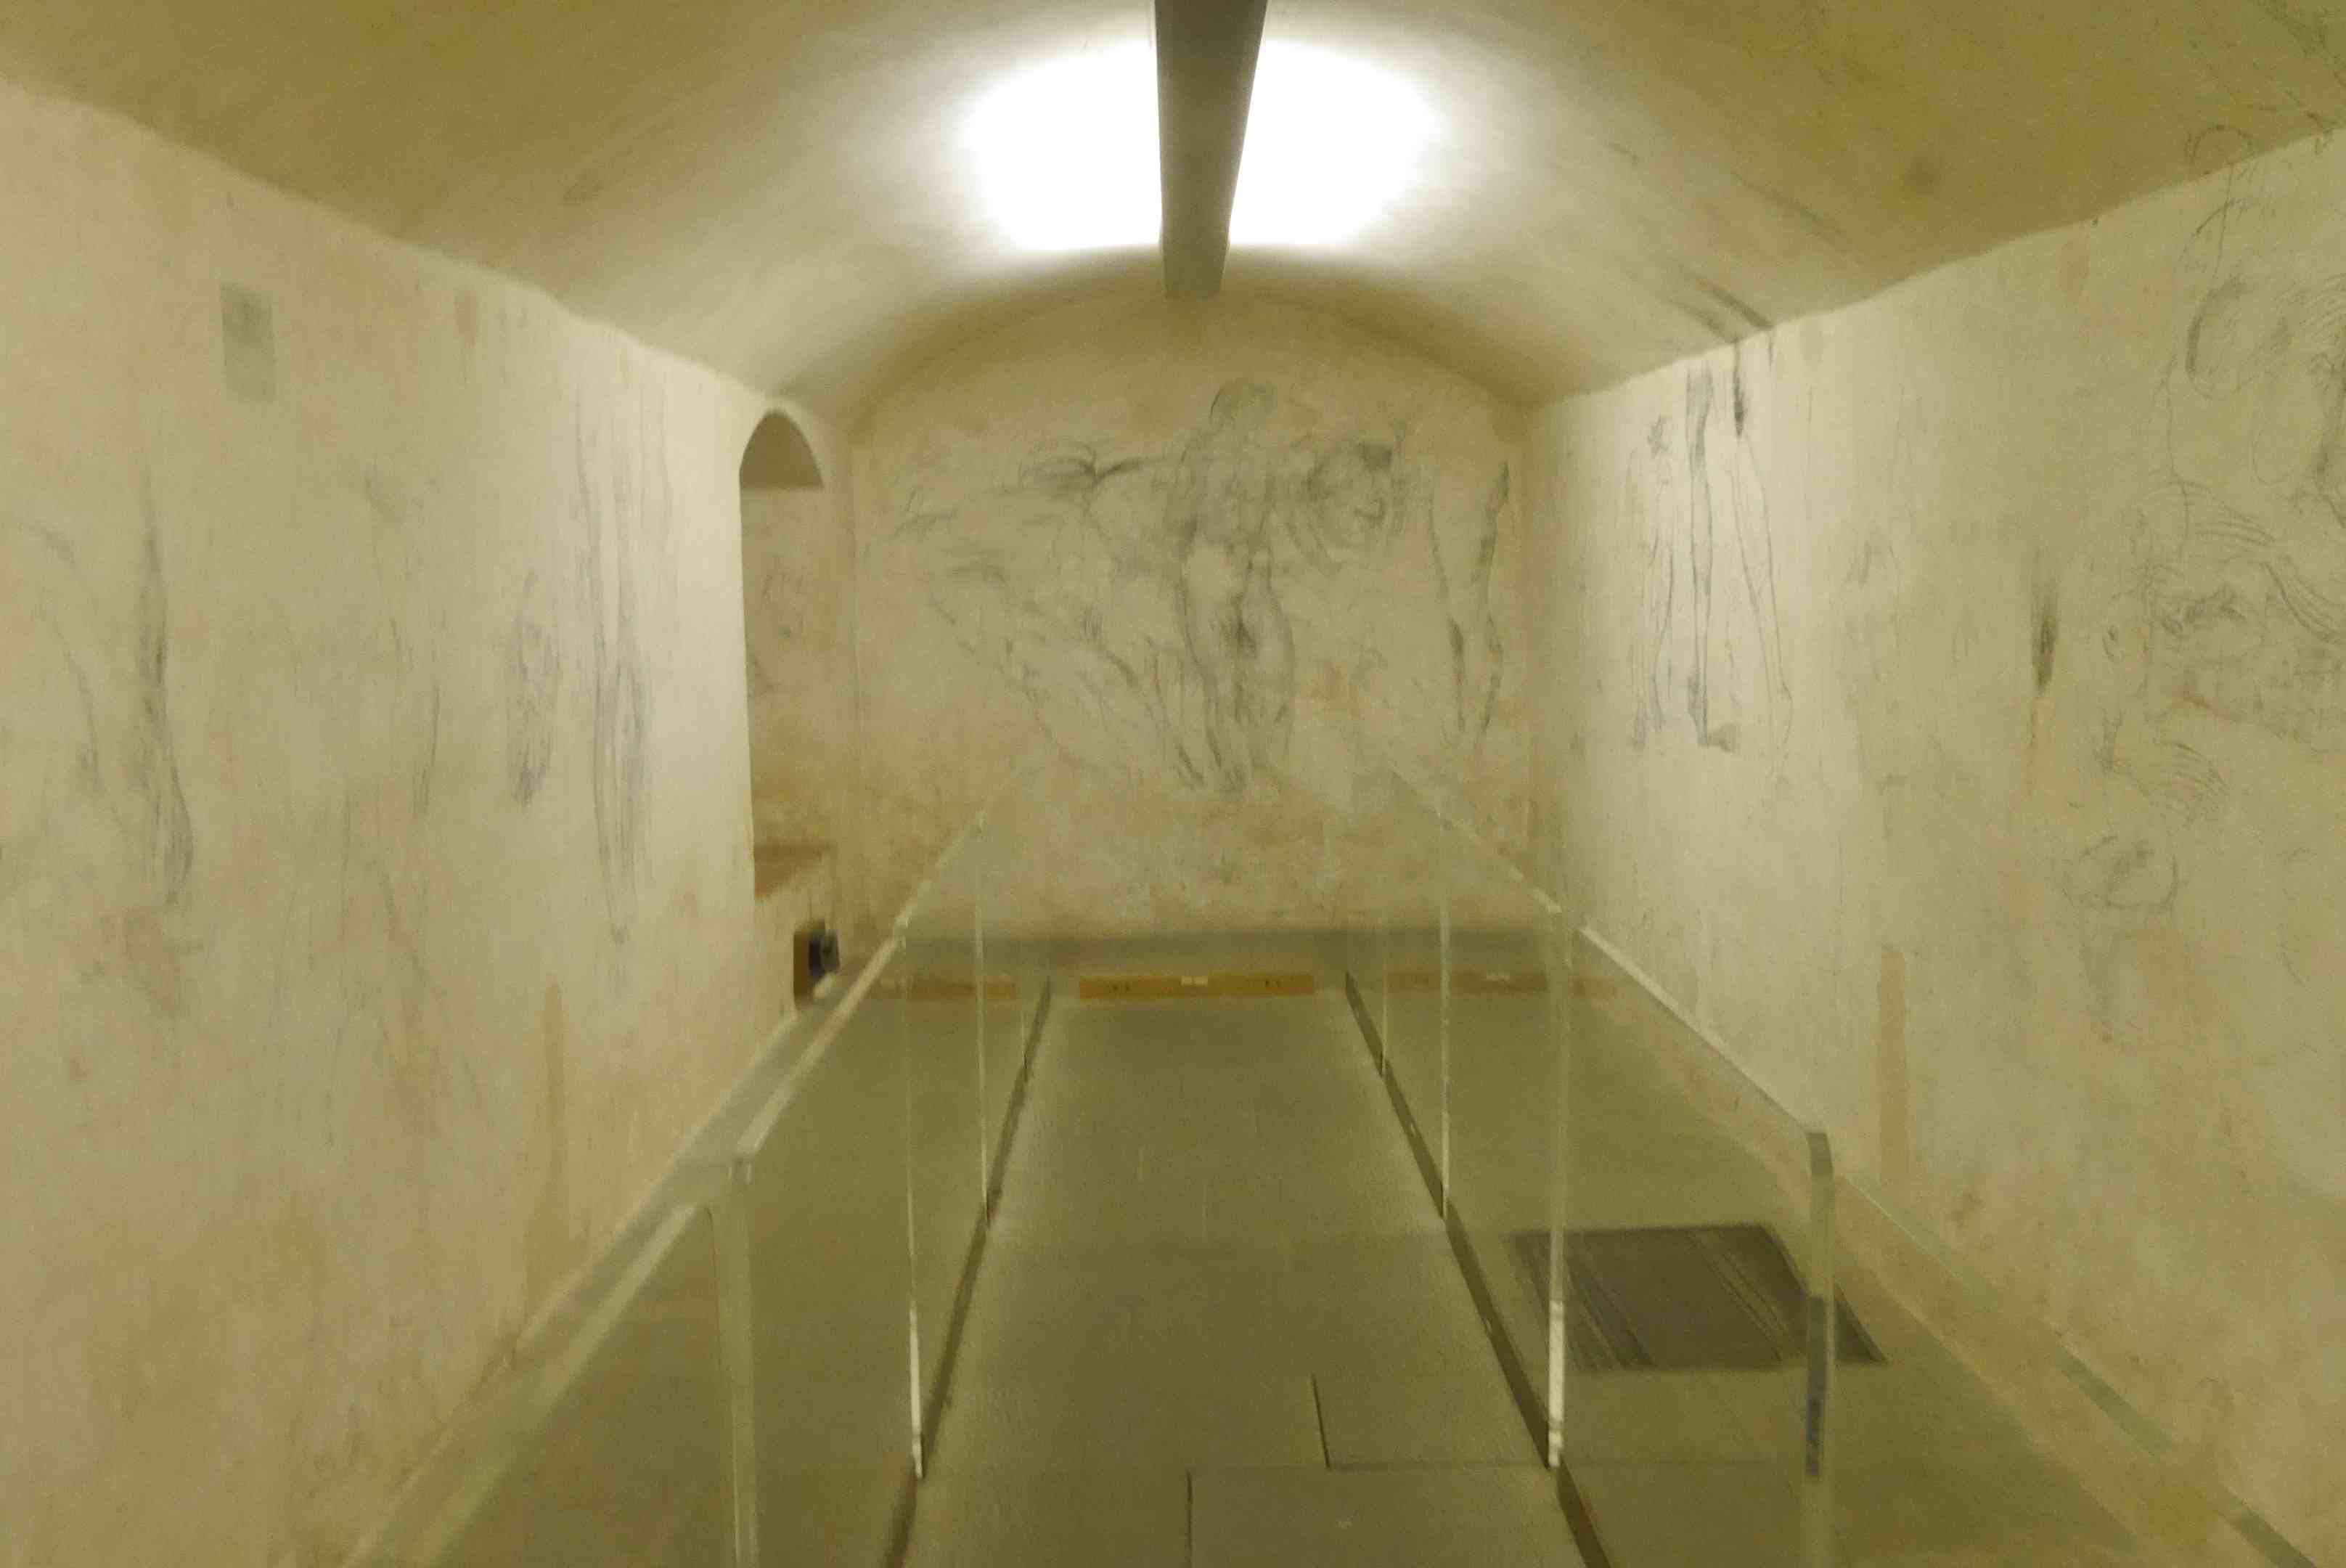 Chambre secrète Michelangelo Alidifirenze